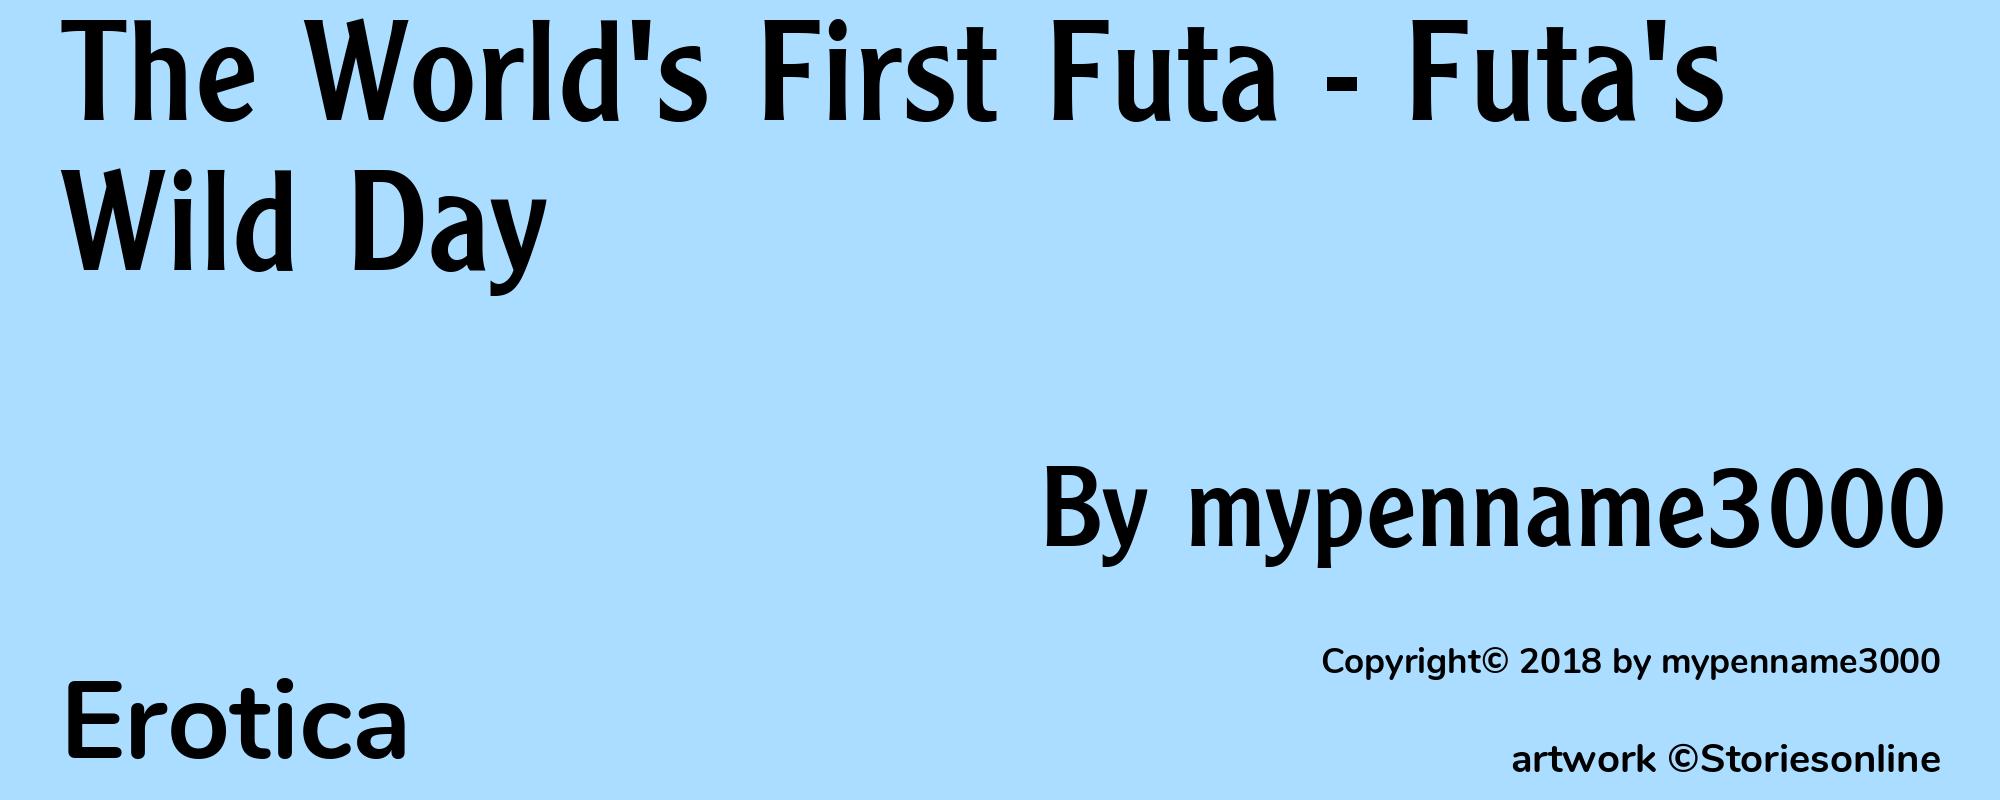 The World's First Futa - Futa's Wild Day - Cover